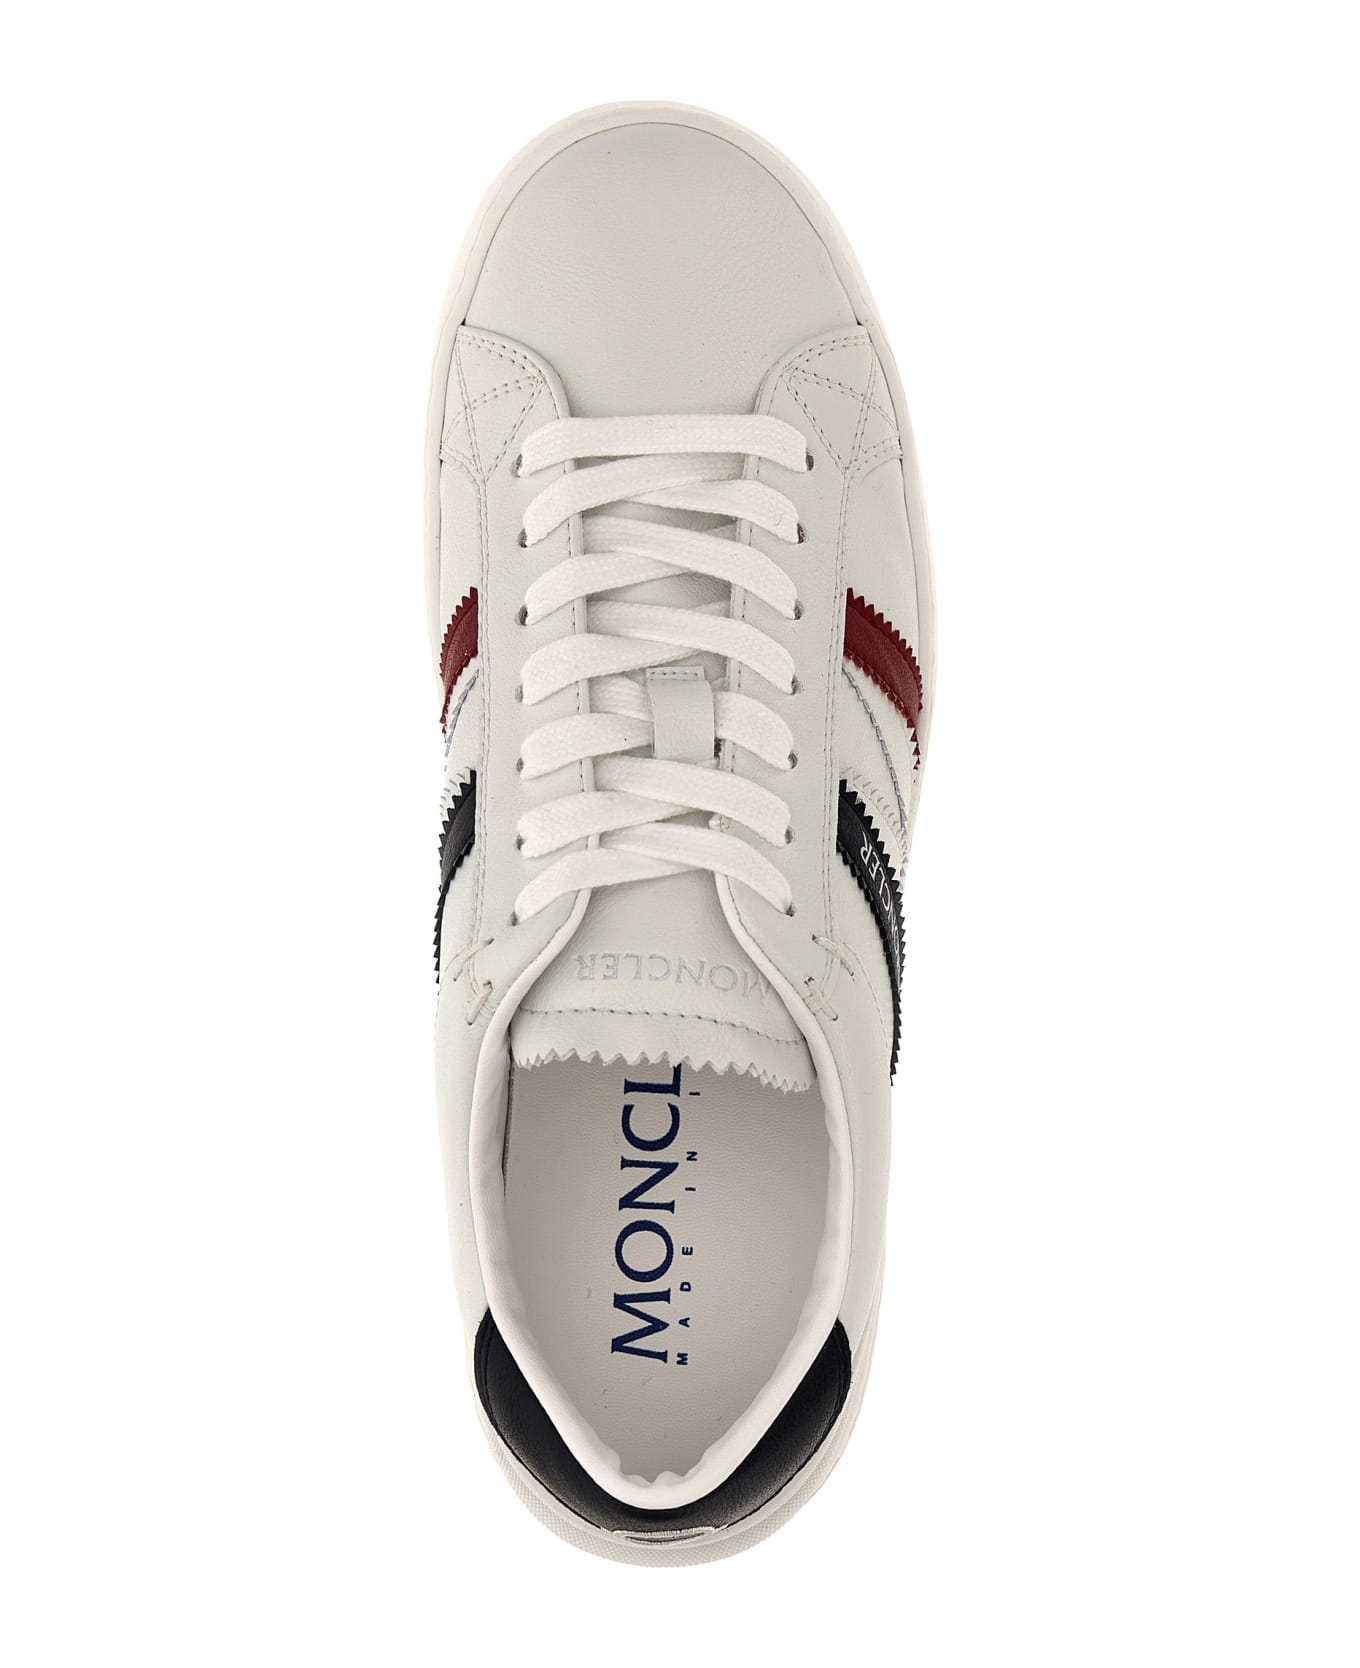 Moncler 'monaco' Sneakers - White